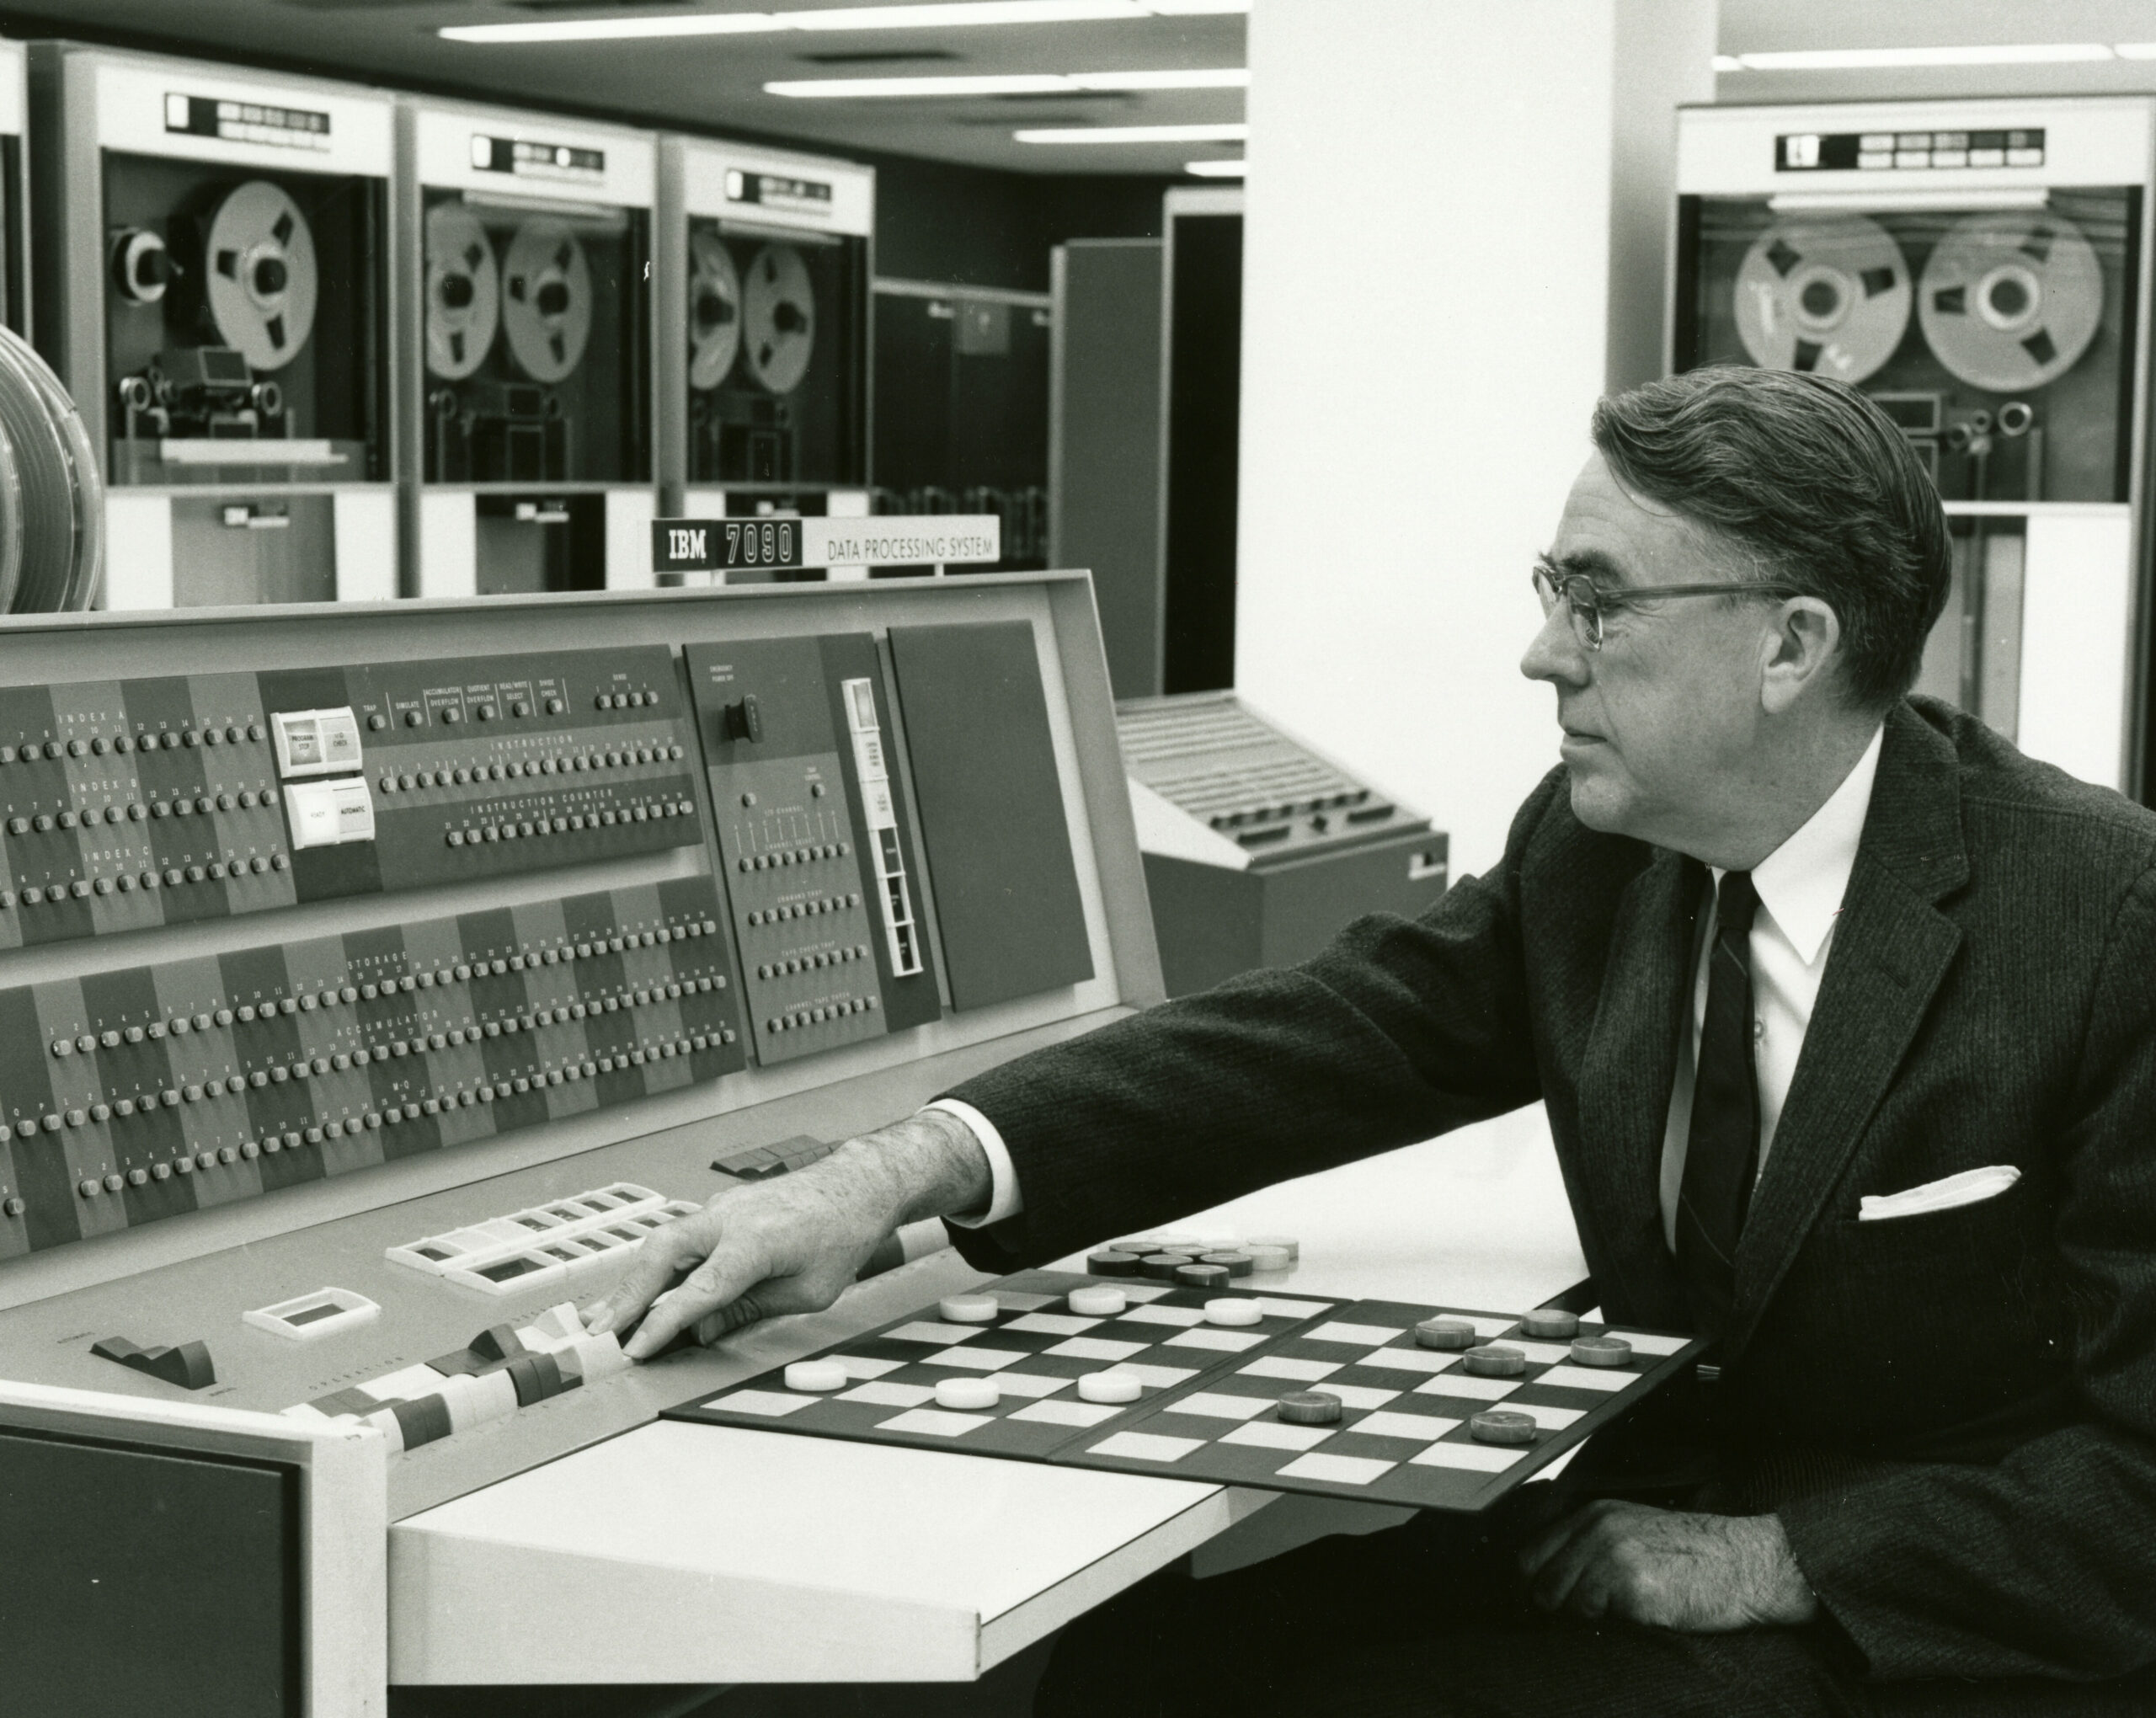 Schwarz-weiß Fotografie aus den 60ern. Rechts im Bild sitzt ein Mann im Anzug der eine Maschine mit vielen Knöpfen bedient, Dabei greift er über ein Spielbrett des Spiels Dame. Englische Bildunterschrift:  Arthur Samuel demonstrates how machine learning can be used to play checkers in 1962